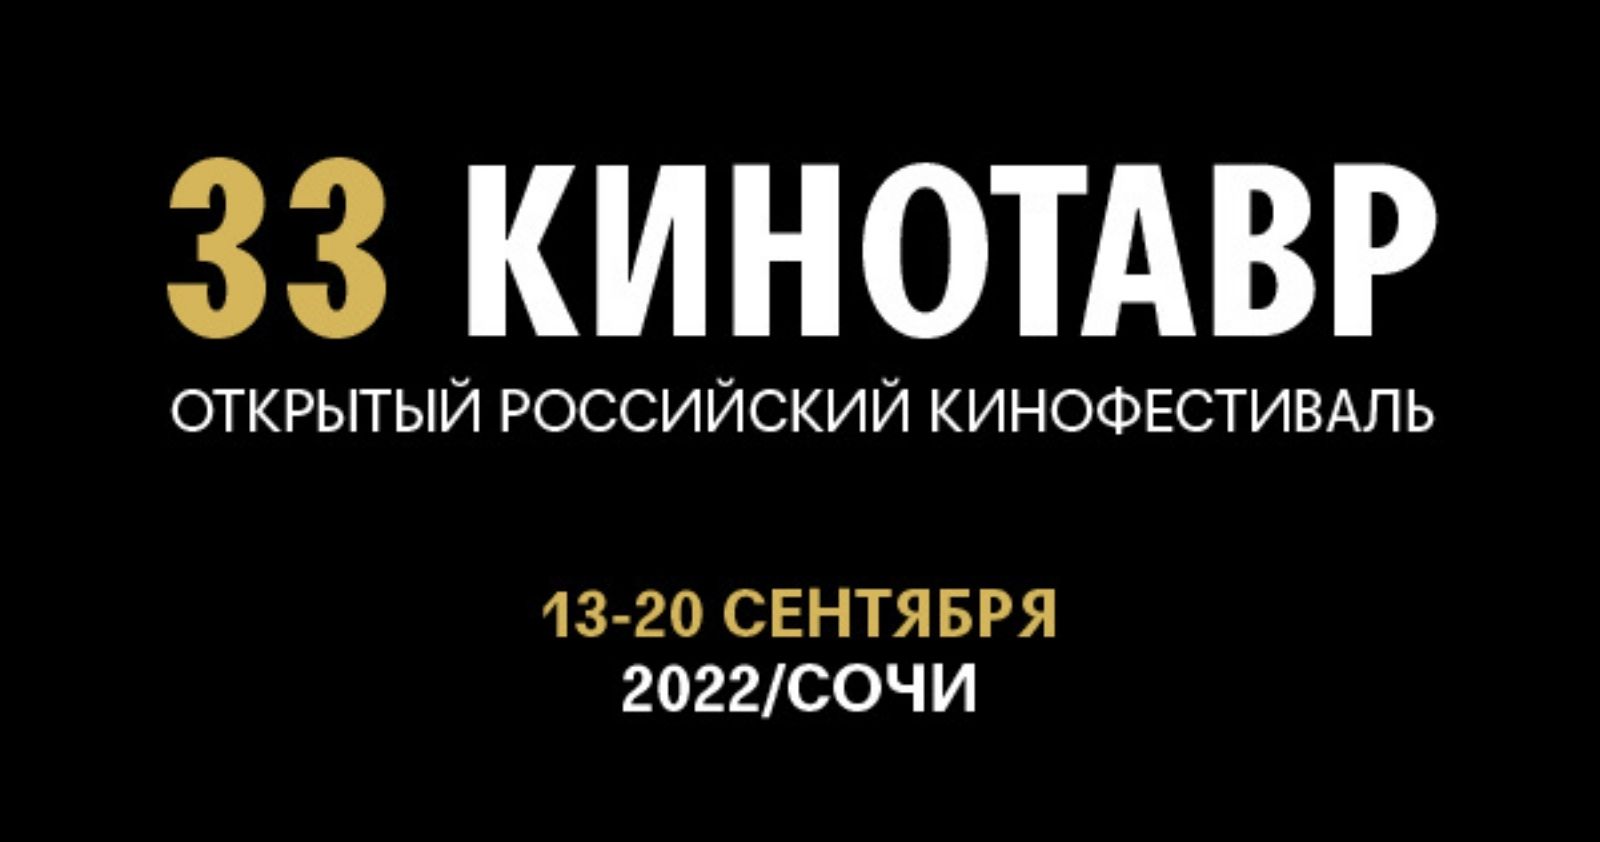 «Кинотавр-2022» пройдет с 13 по 20 сентября в формате делового форума